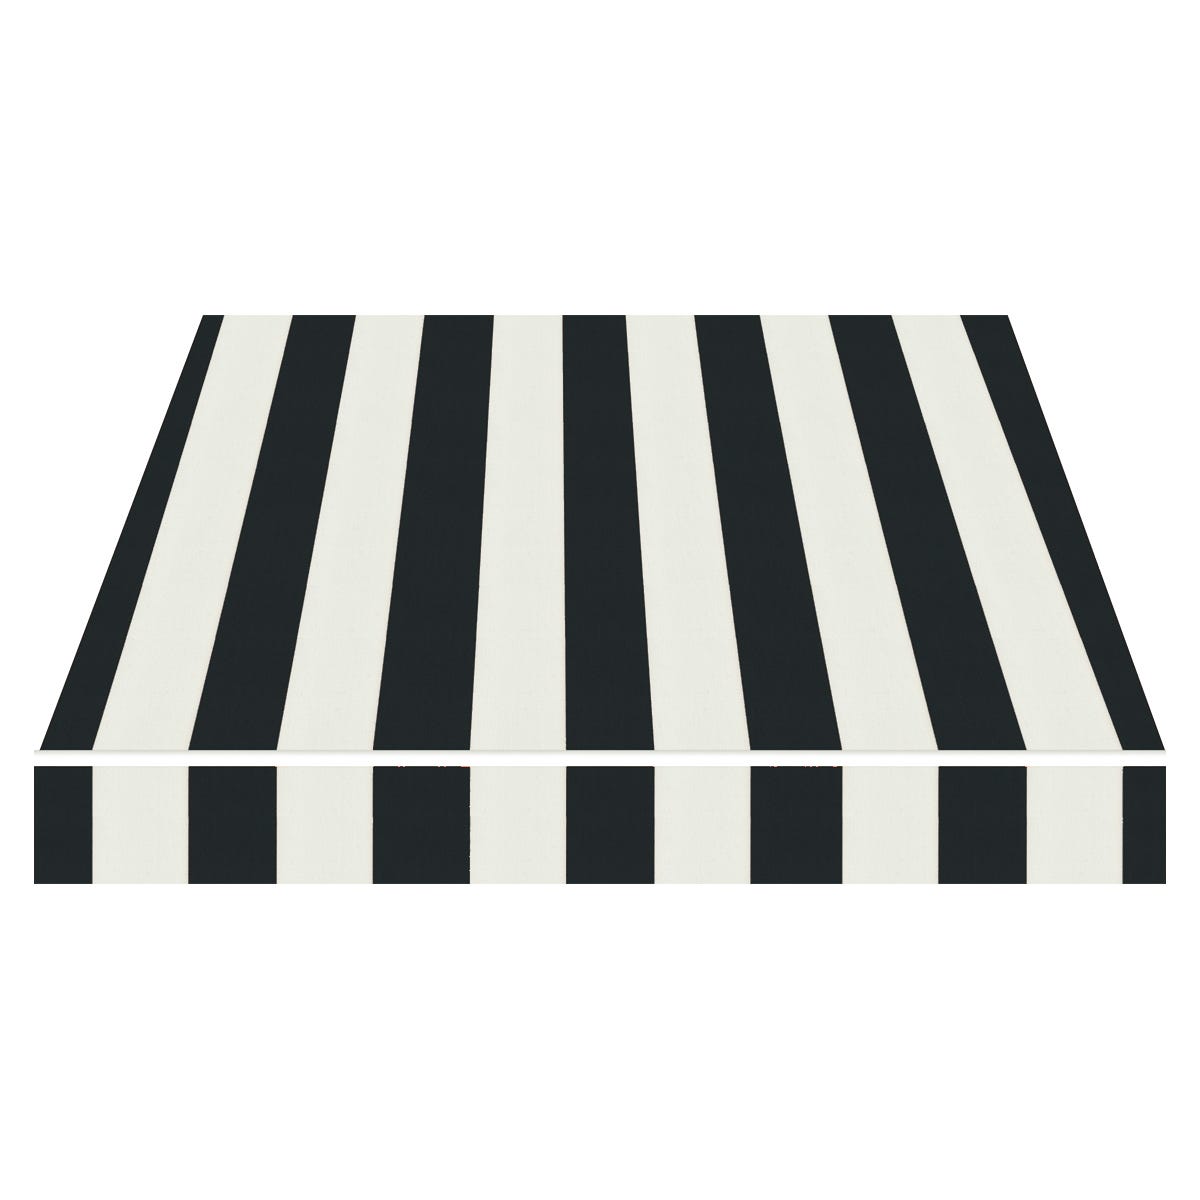 Toile pour store banne 6 x 2,75 m - Tissu acrylique Sauleda Blanc/Noir 2171  - Rentoilage sur-mesure store de terrasse extérieur